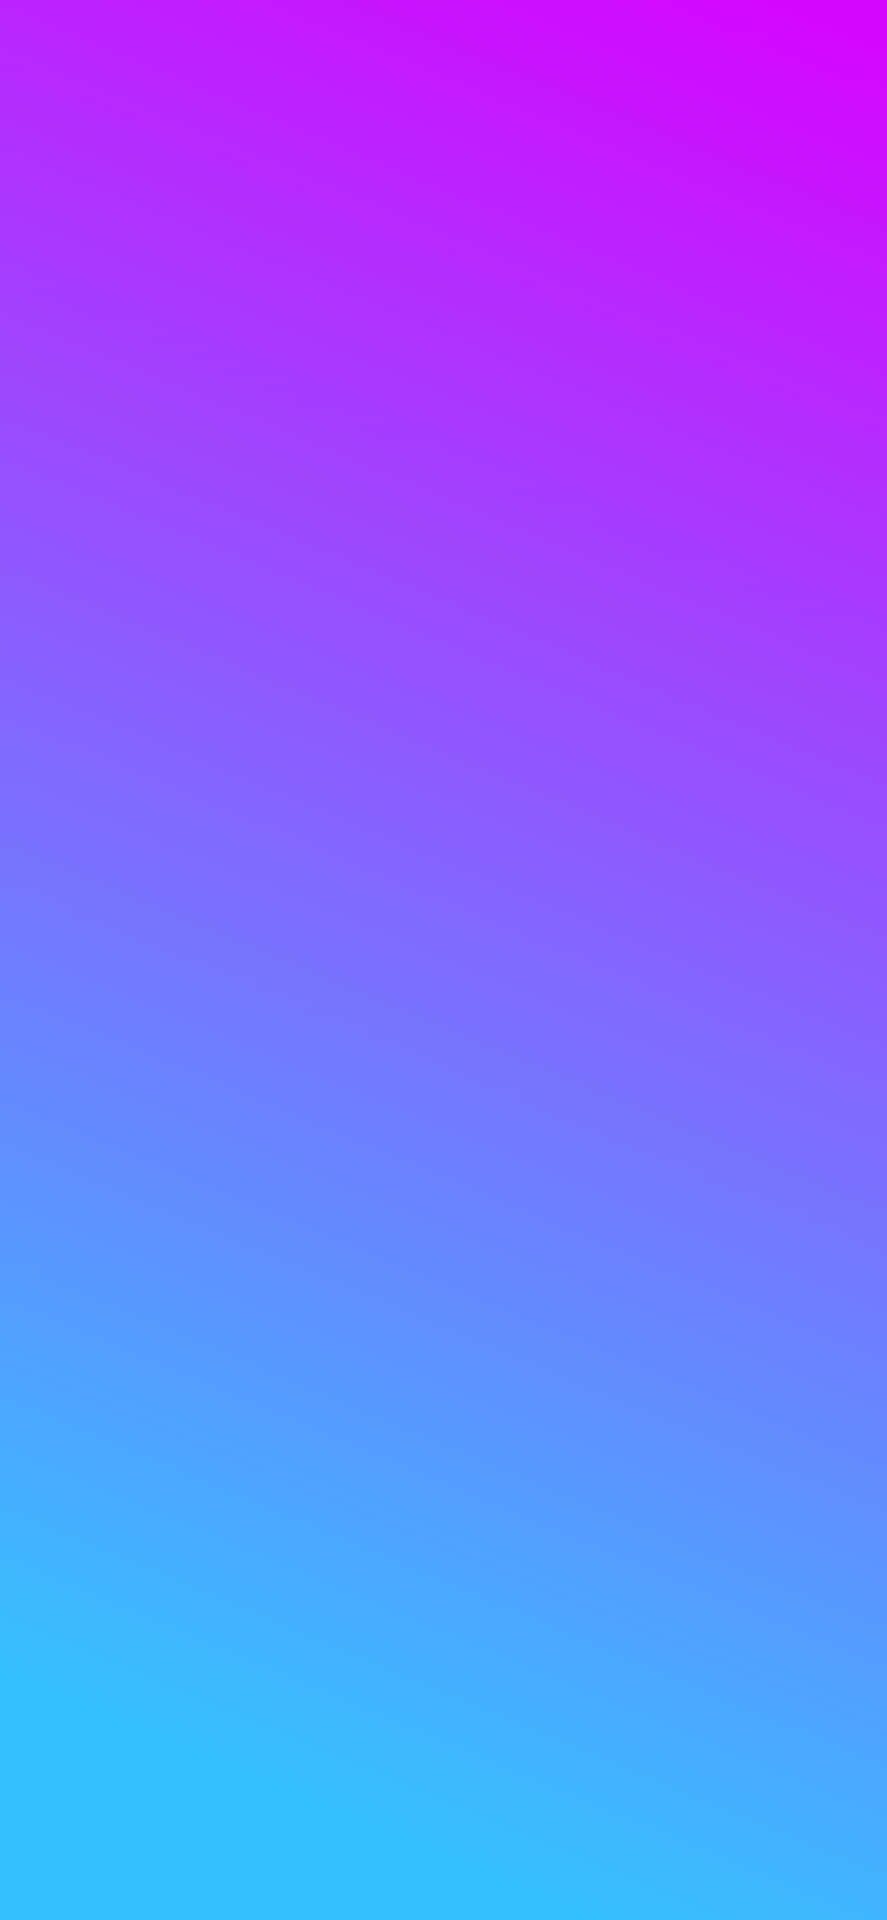 Abstrakterhintergrund Mit Lila, Blauen Und Violetten Farben